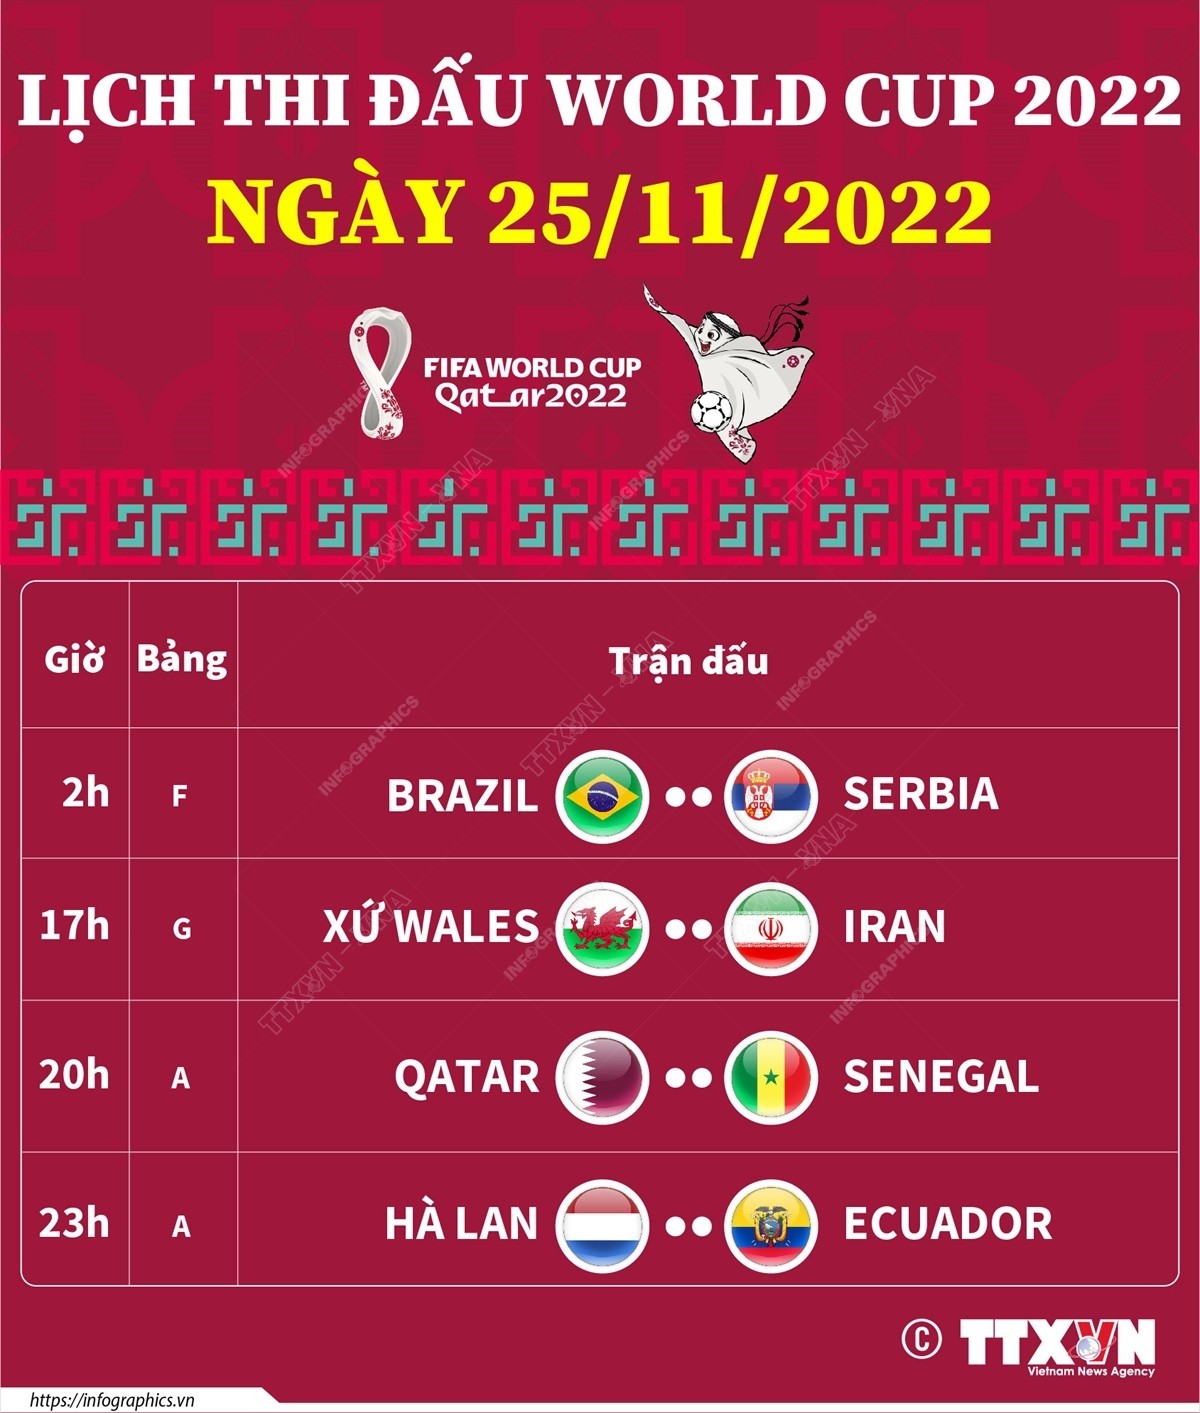 Lịch thi đấu World Cup 2022 ngày 25/11/2022